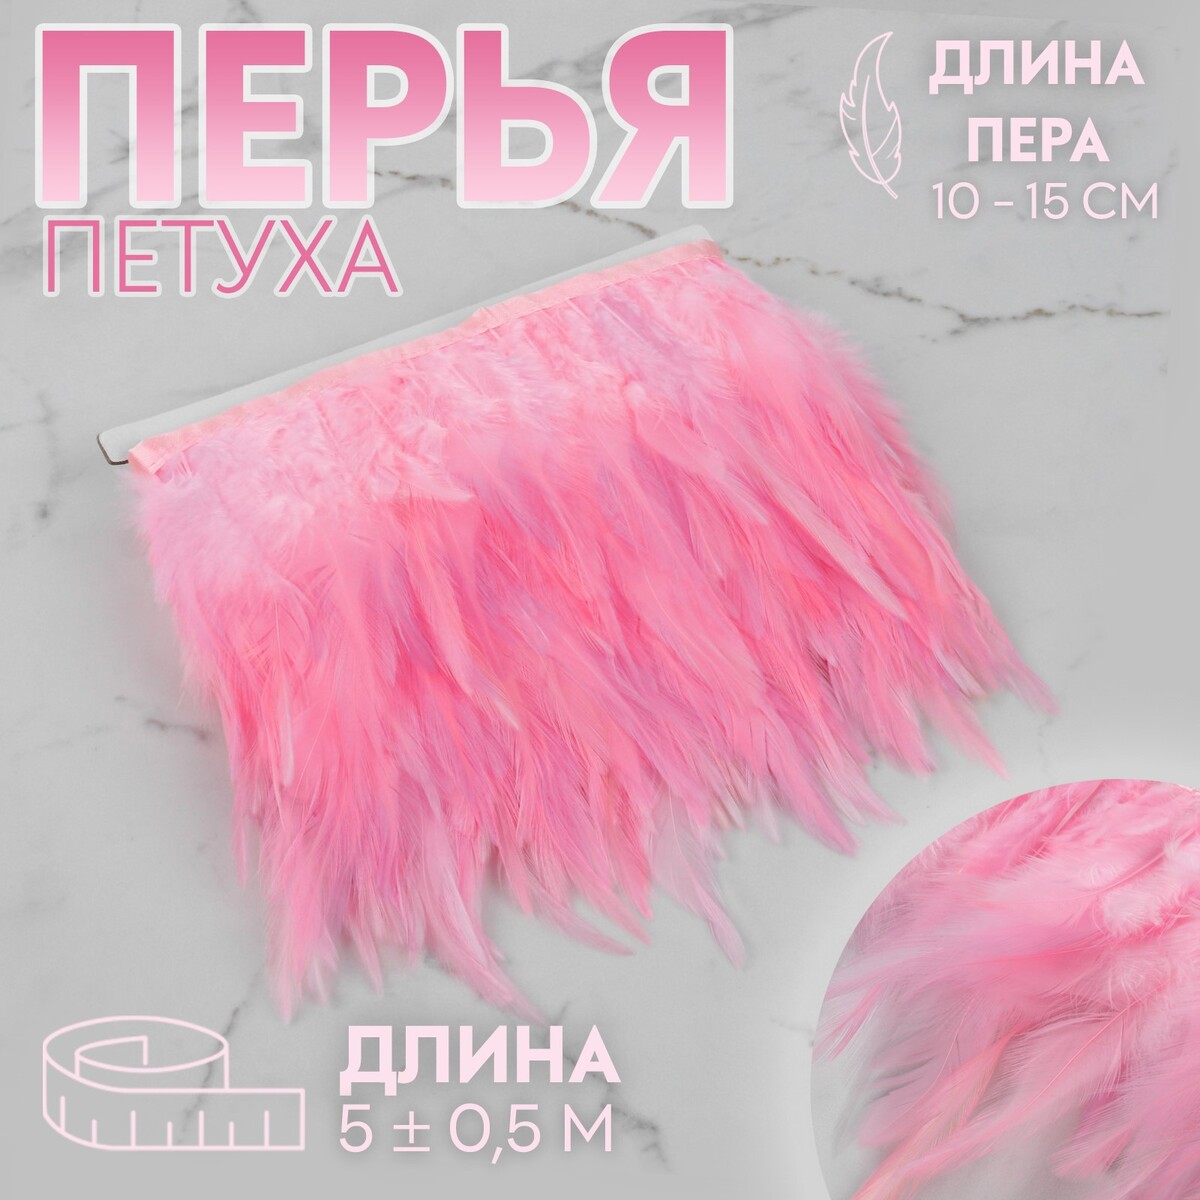 Тесьма с перьями петуха, 10-15 см, 5 ± 0,5 м, цвет розовый тесьма с перьями индюка 13 17 см 5 ± 0 5 м изумрудный